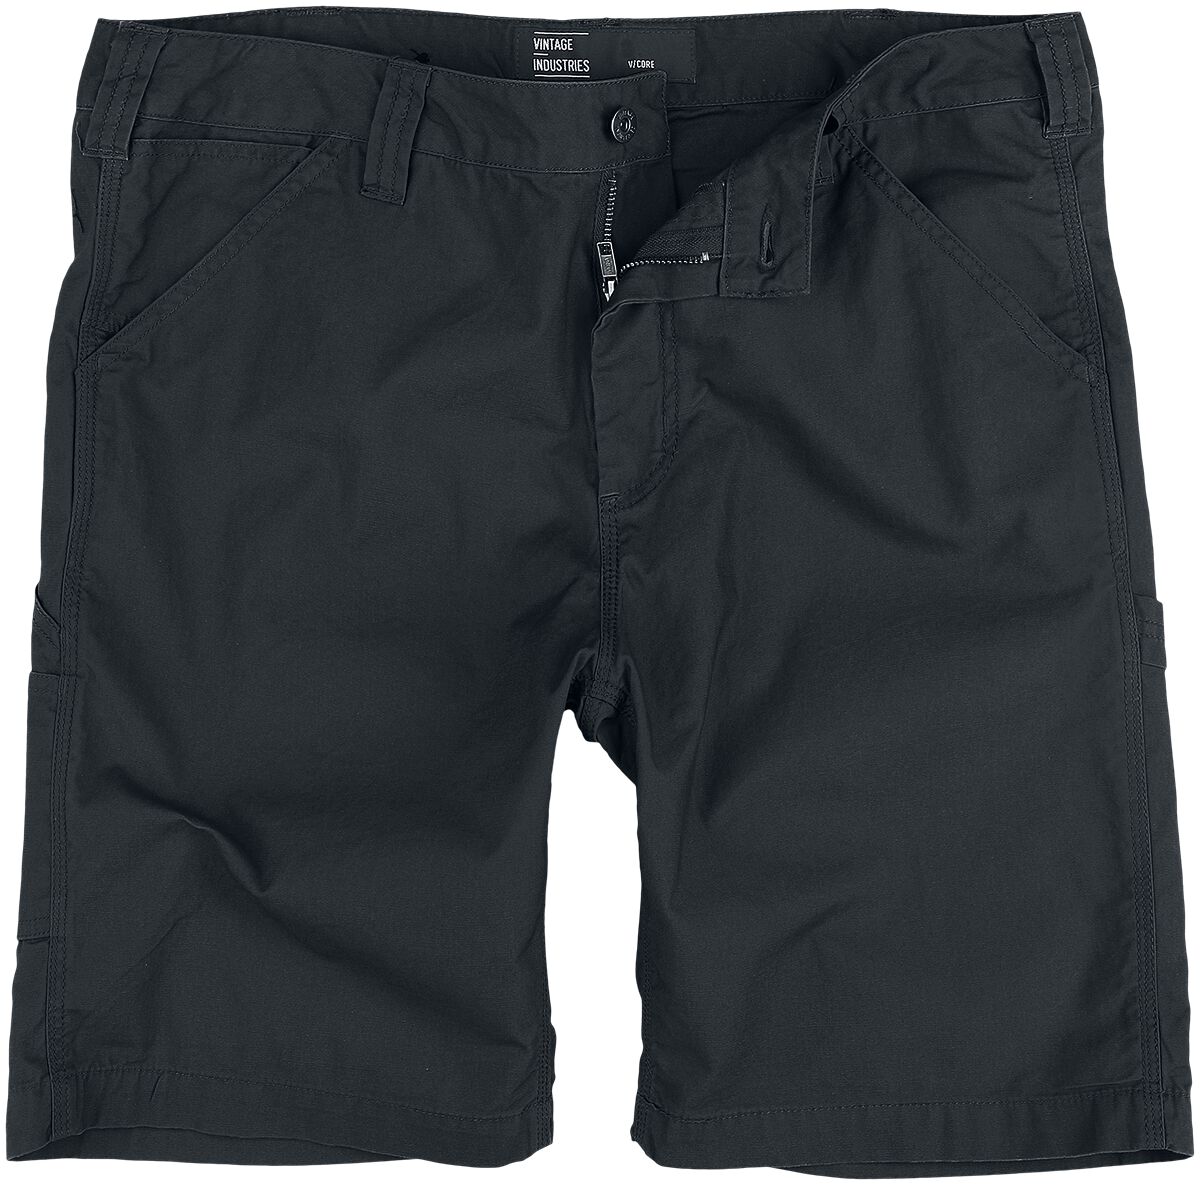 Vintage Industries Short - Alcott Shorts - XS bis 3XL - für Männer - Größe 3XL - schwarz